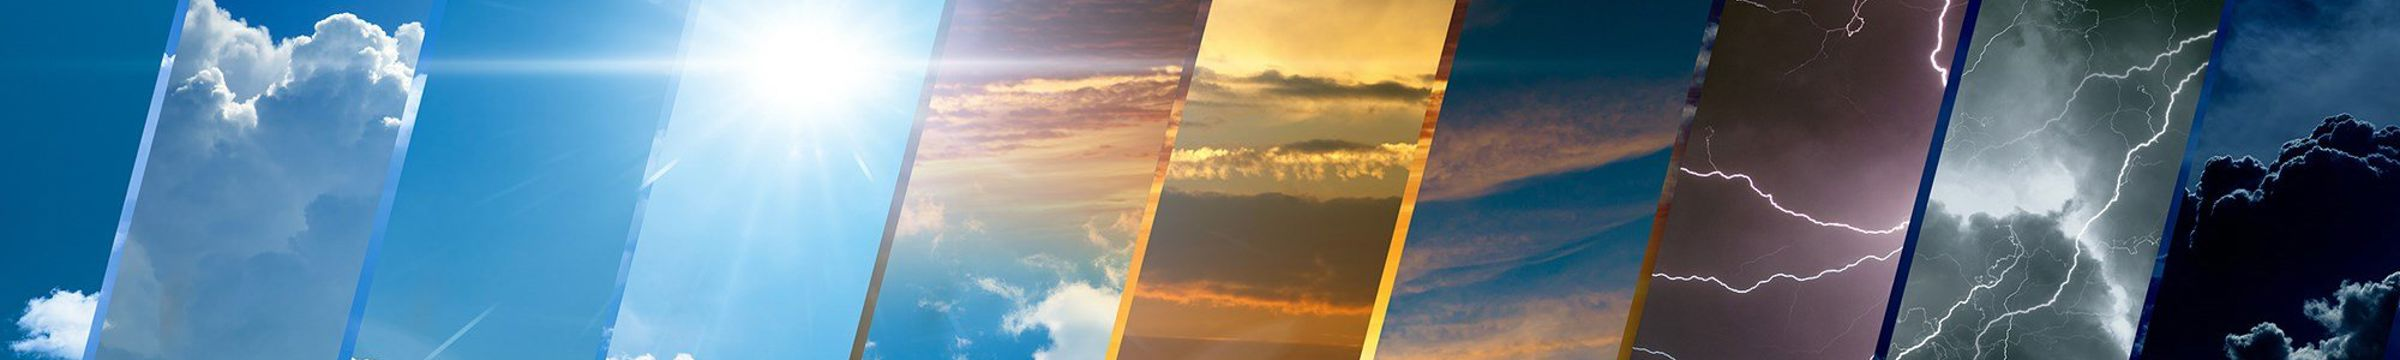 bilde som viser paneler med sol og skyer